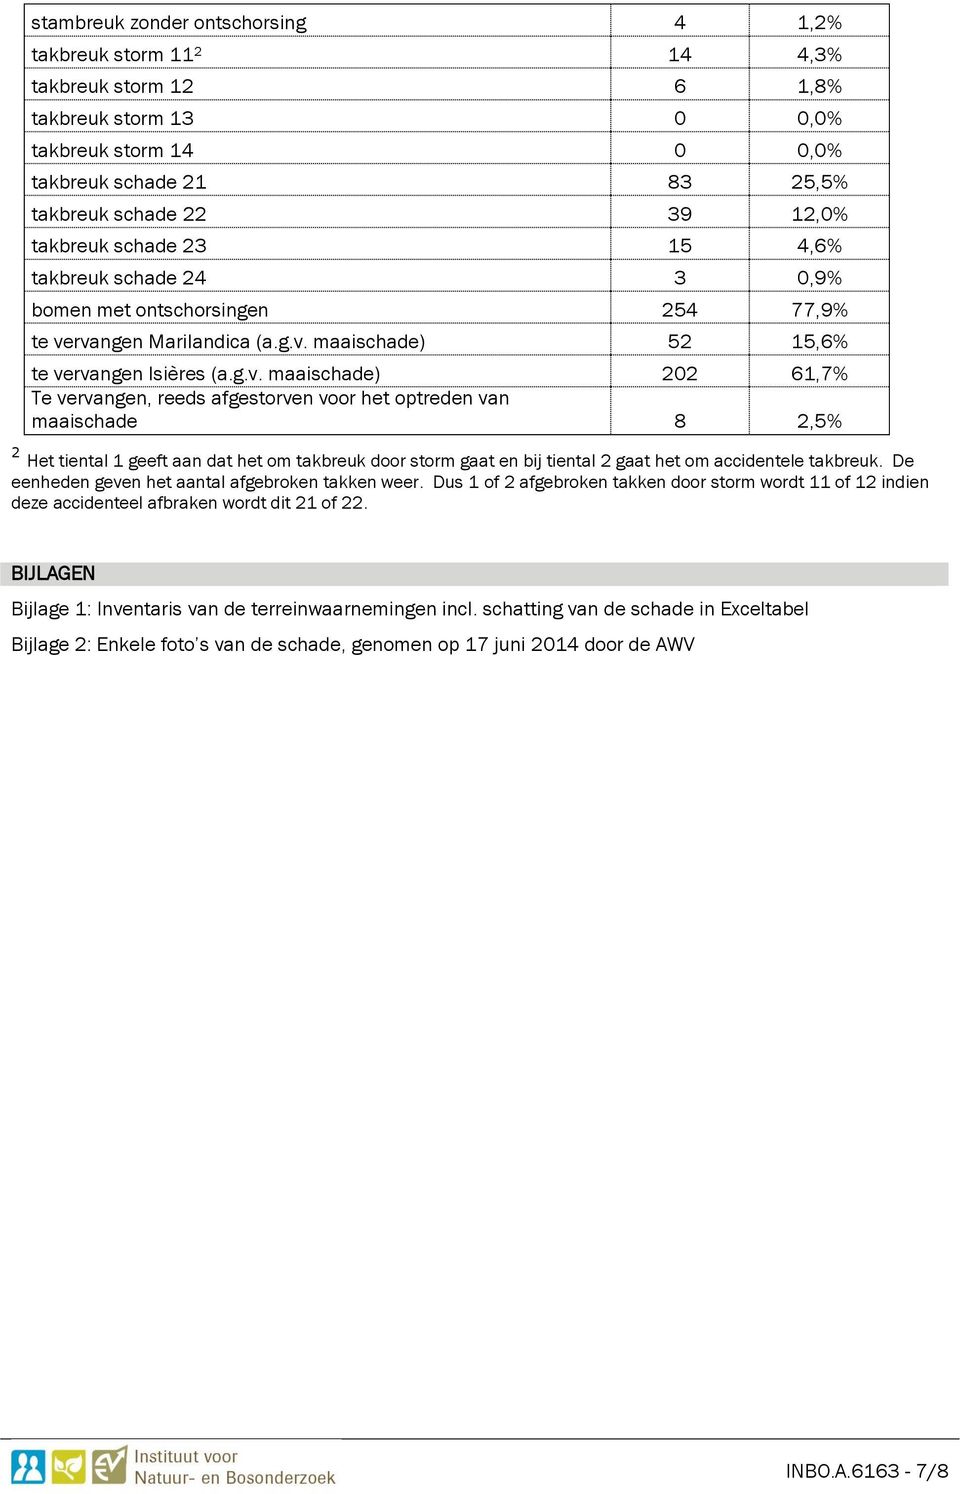 rvangen Marilandica (a.g.v. maaischade) 52 15,6% te vervangen Isières (a.g.v. maaischade) 202 61,7% Te vervangen, reeds afgestorven voor het optreden van maaischade 8 2,5% 2 Het tiental 1 geeft aan